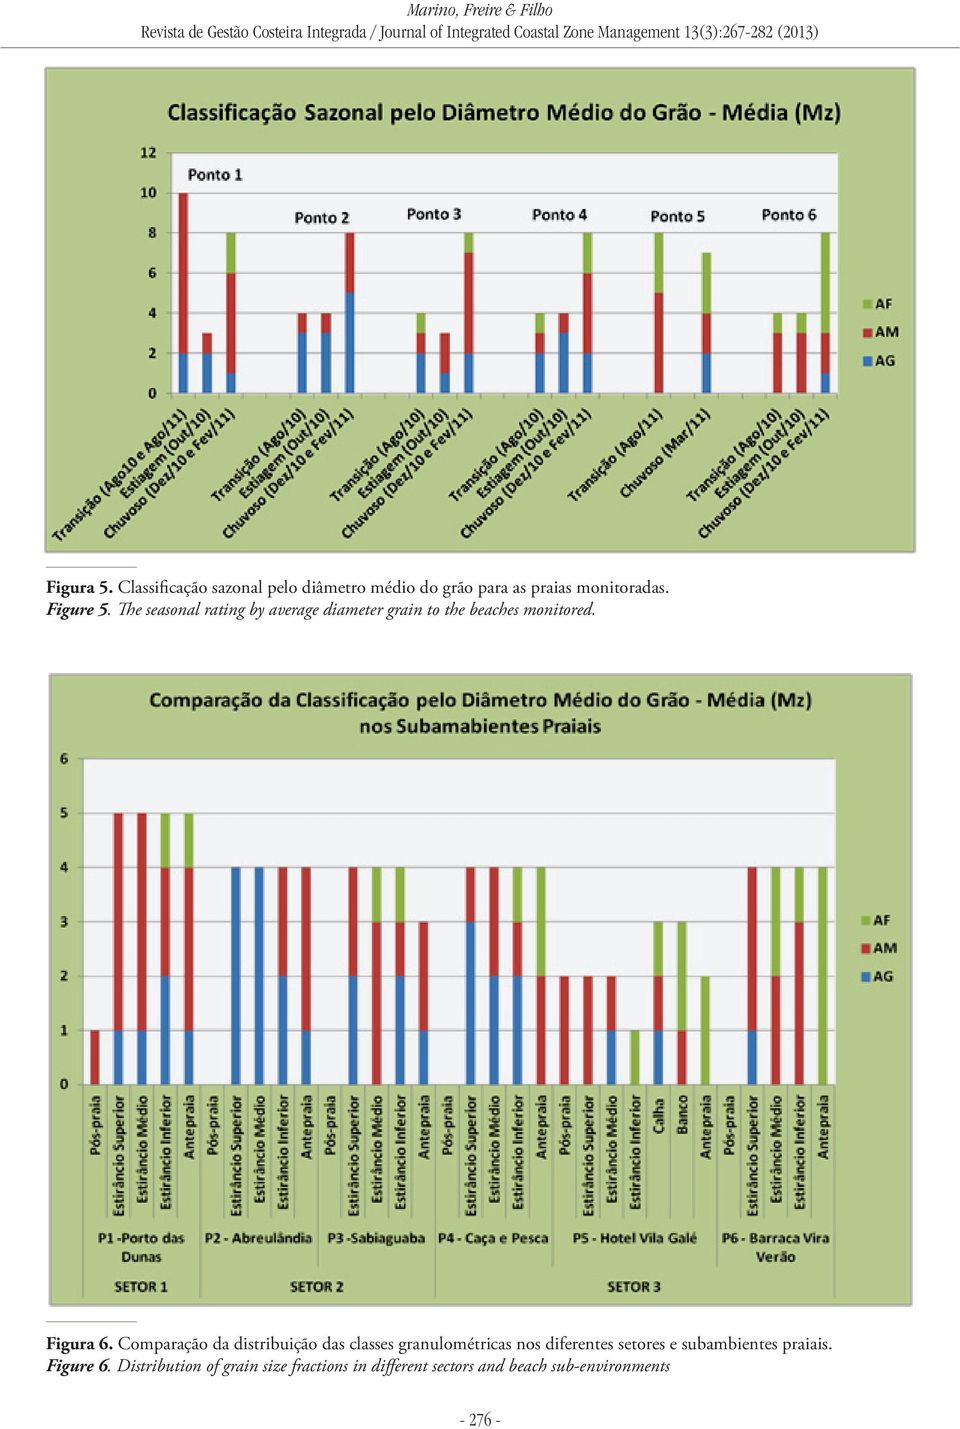 Comparação da distribuição das classes granulométricas nos diferentes setores e subambientes